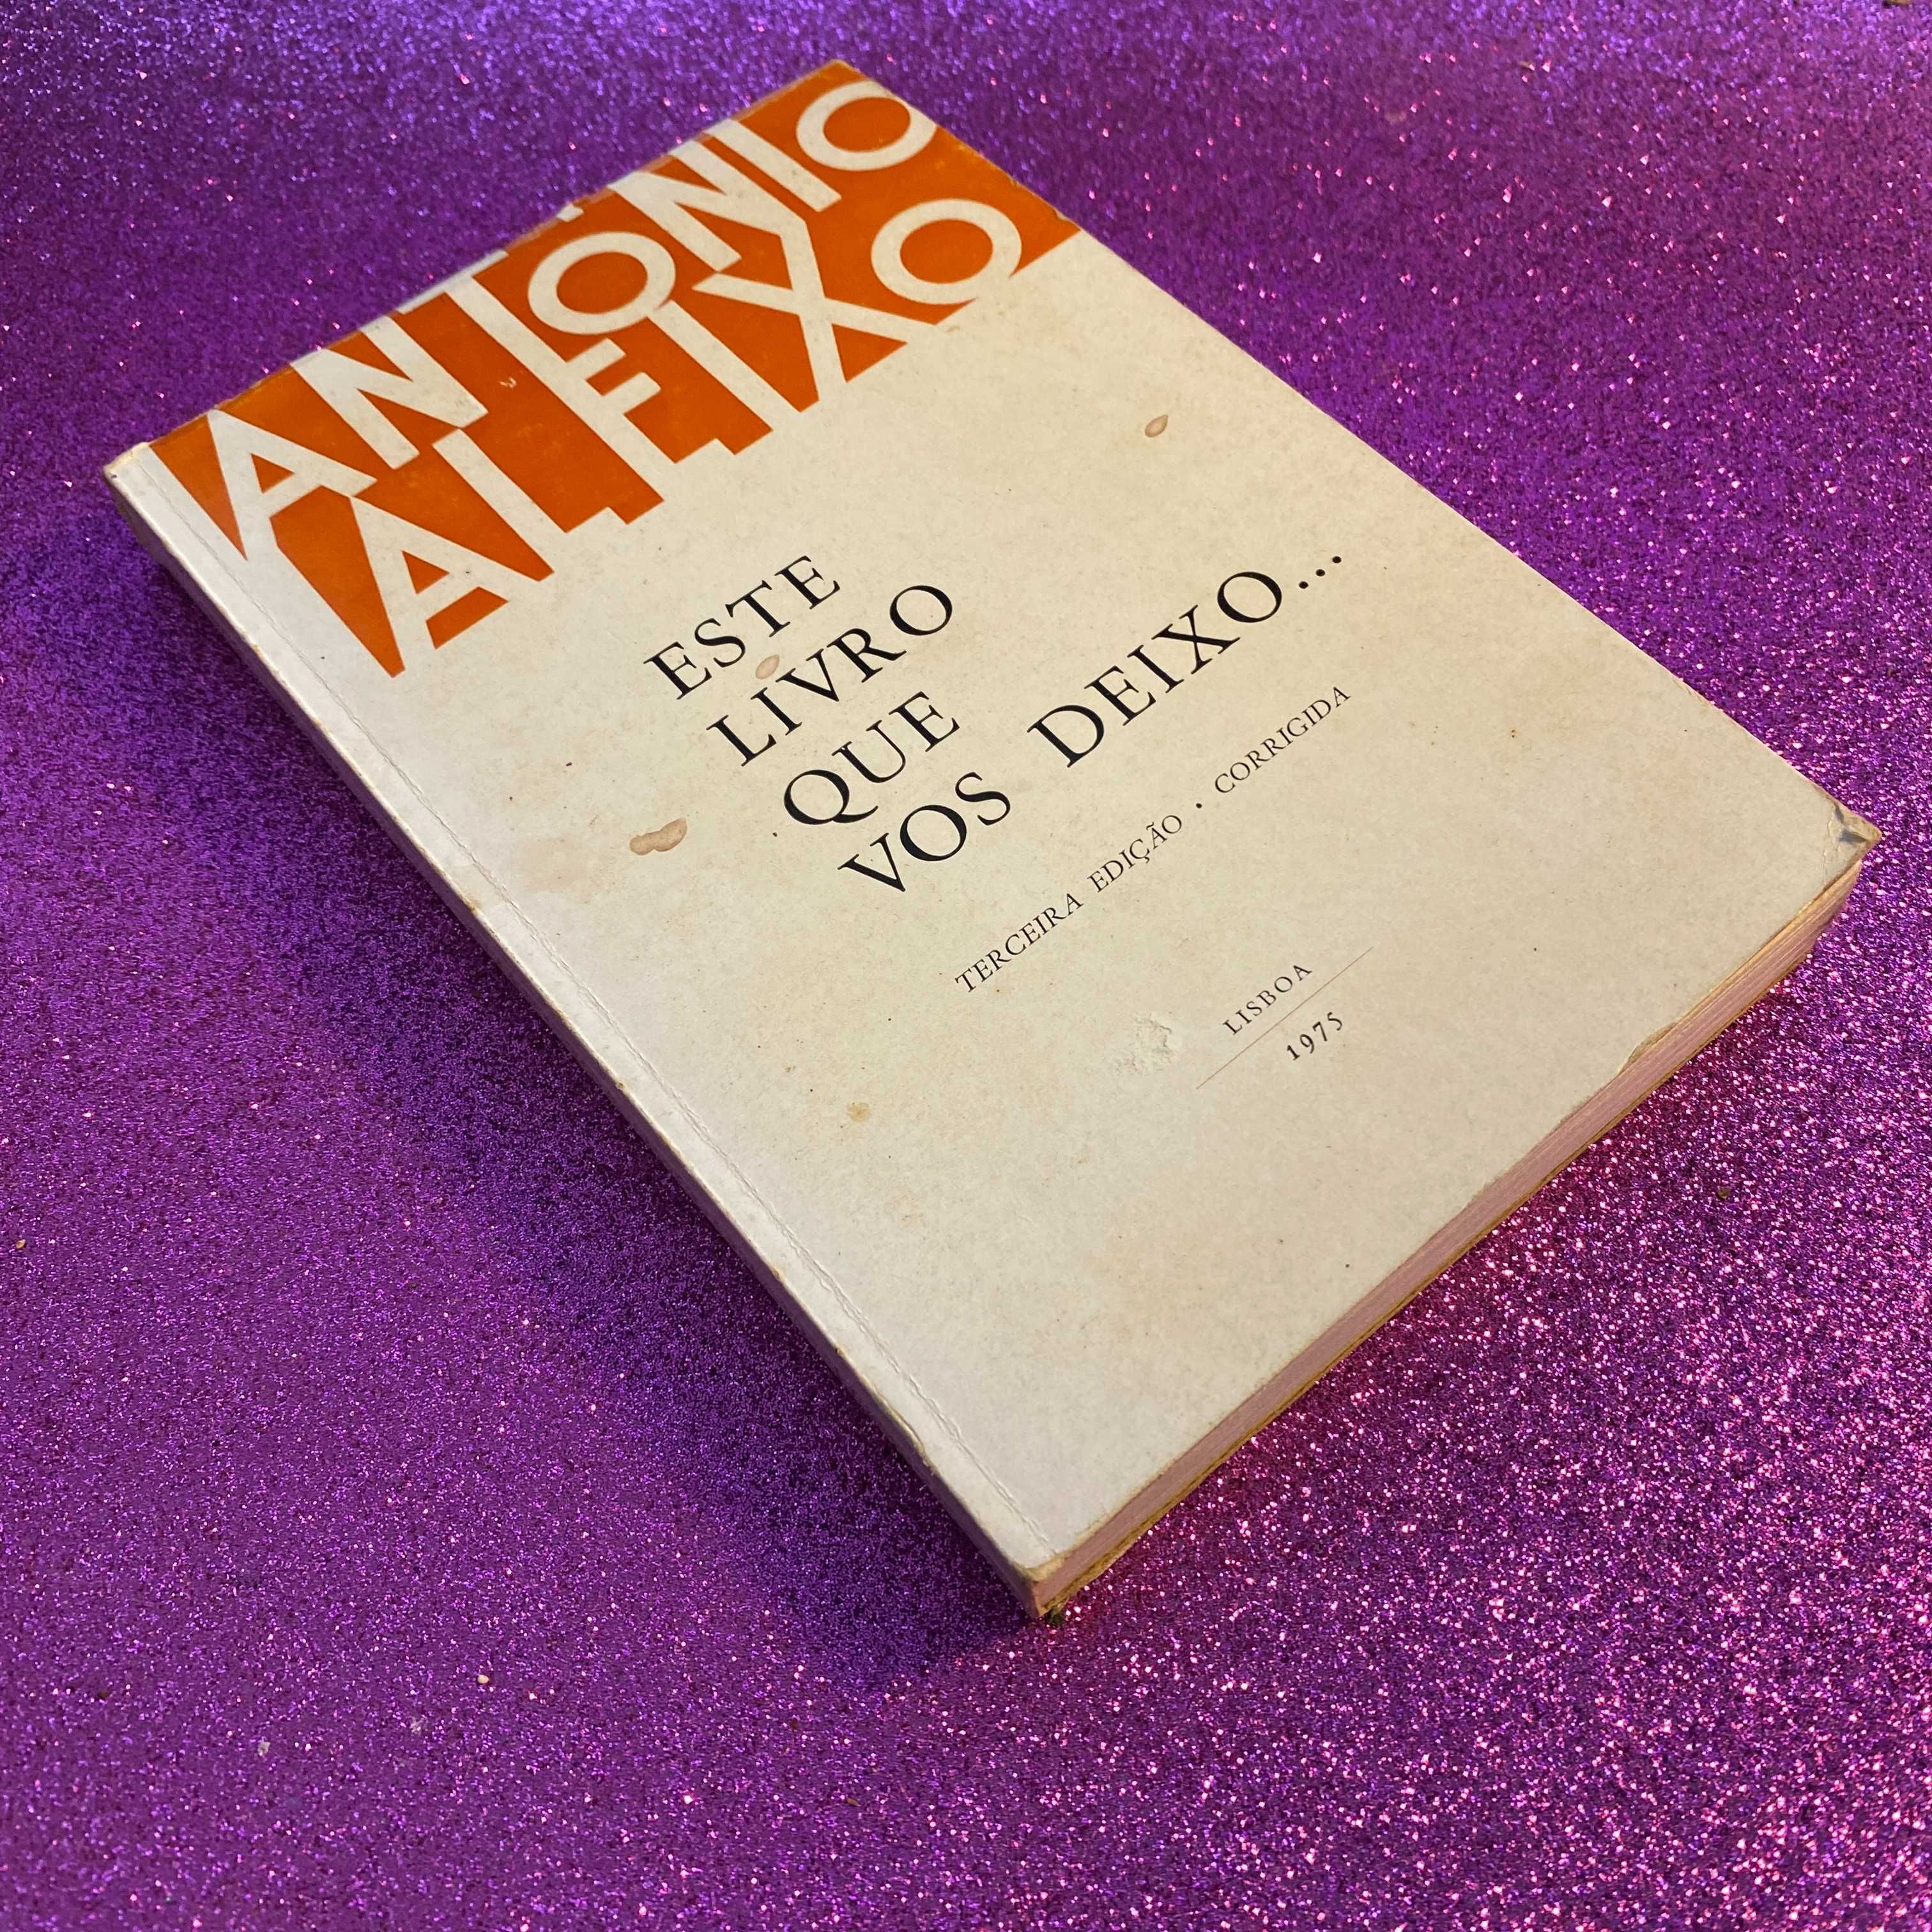 Este livro que vos deixo - Terceira edição corrigida - António Aleixo